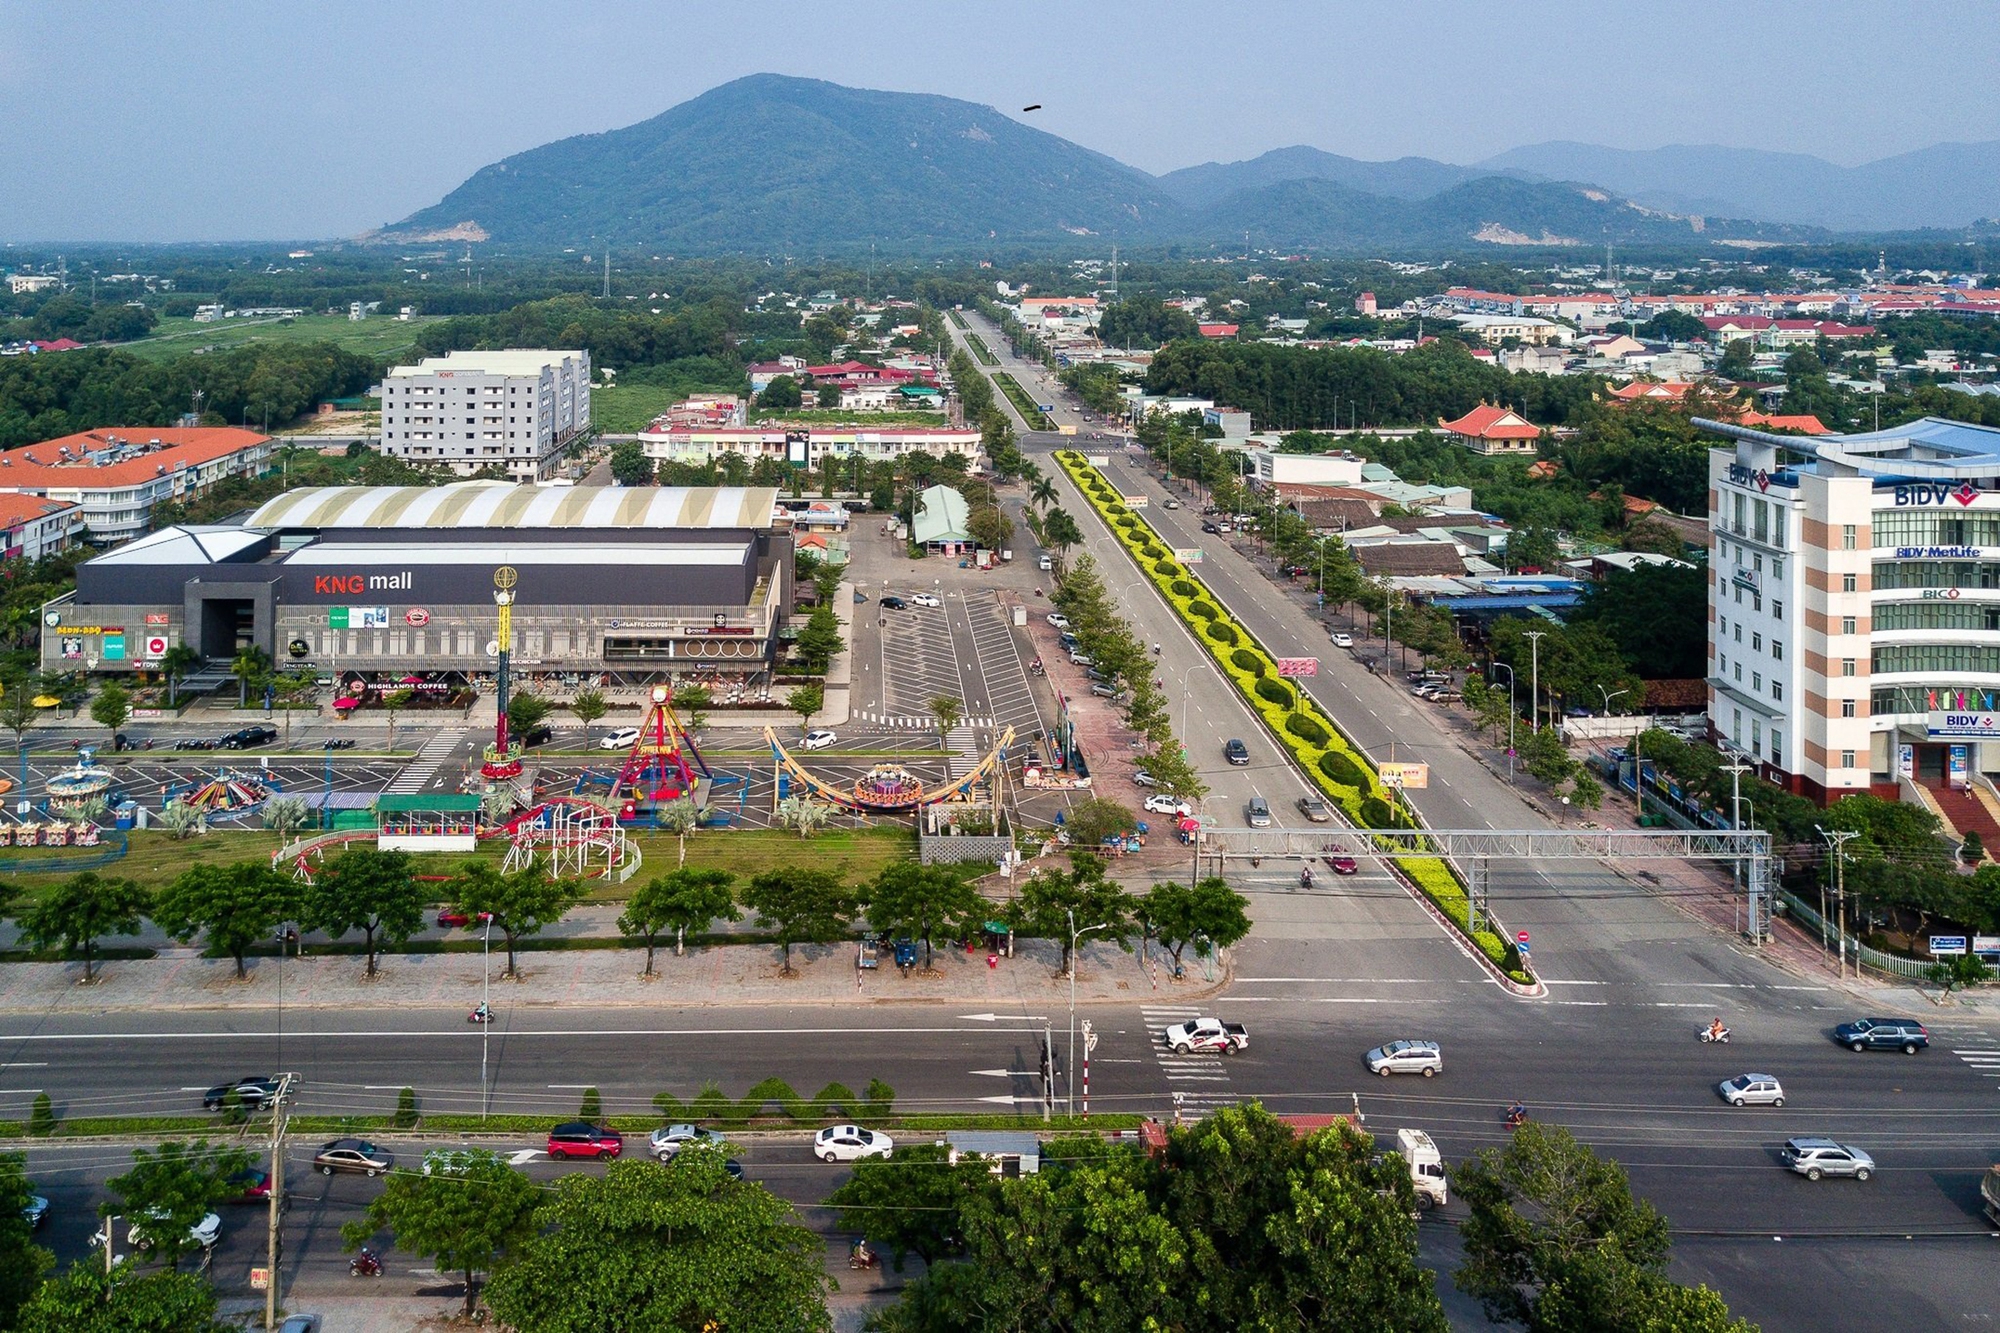 Tiềm năng bất động sản Phú Mỹ nhờ hạ tầng giao thông - Ảnh 1.